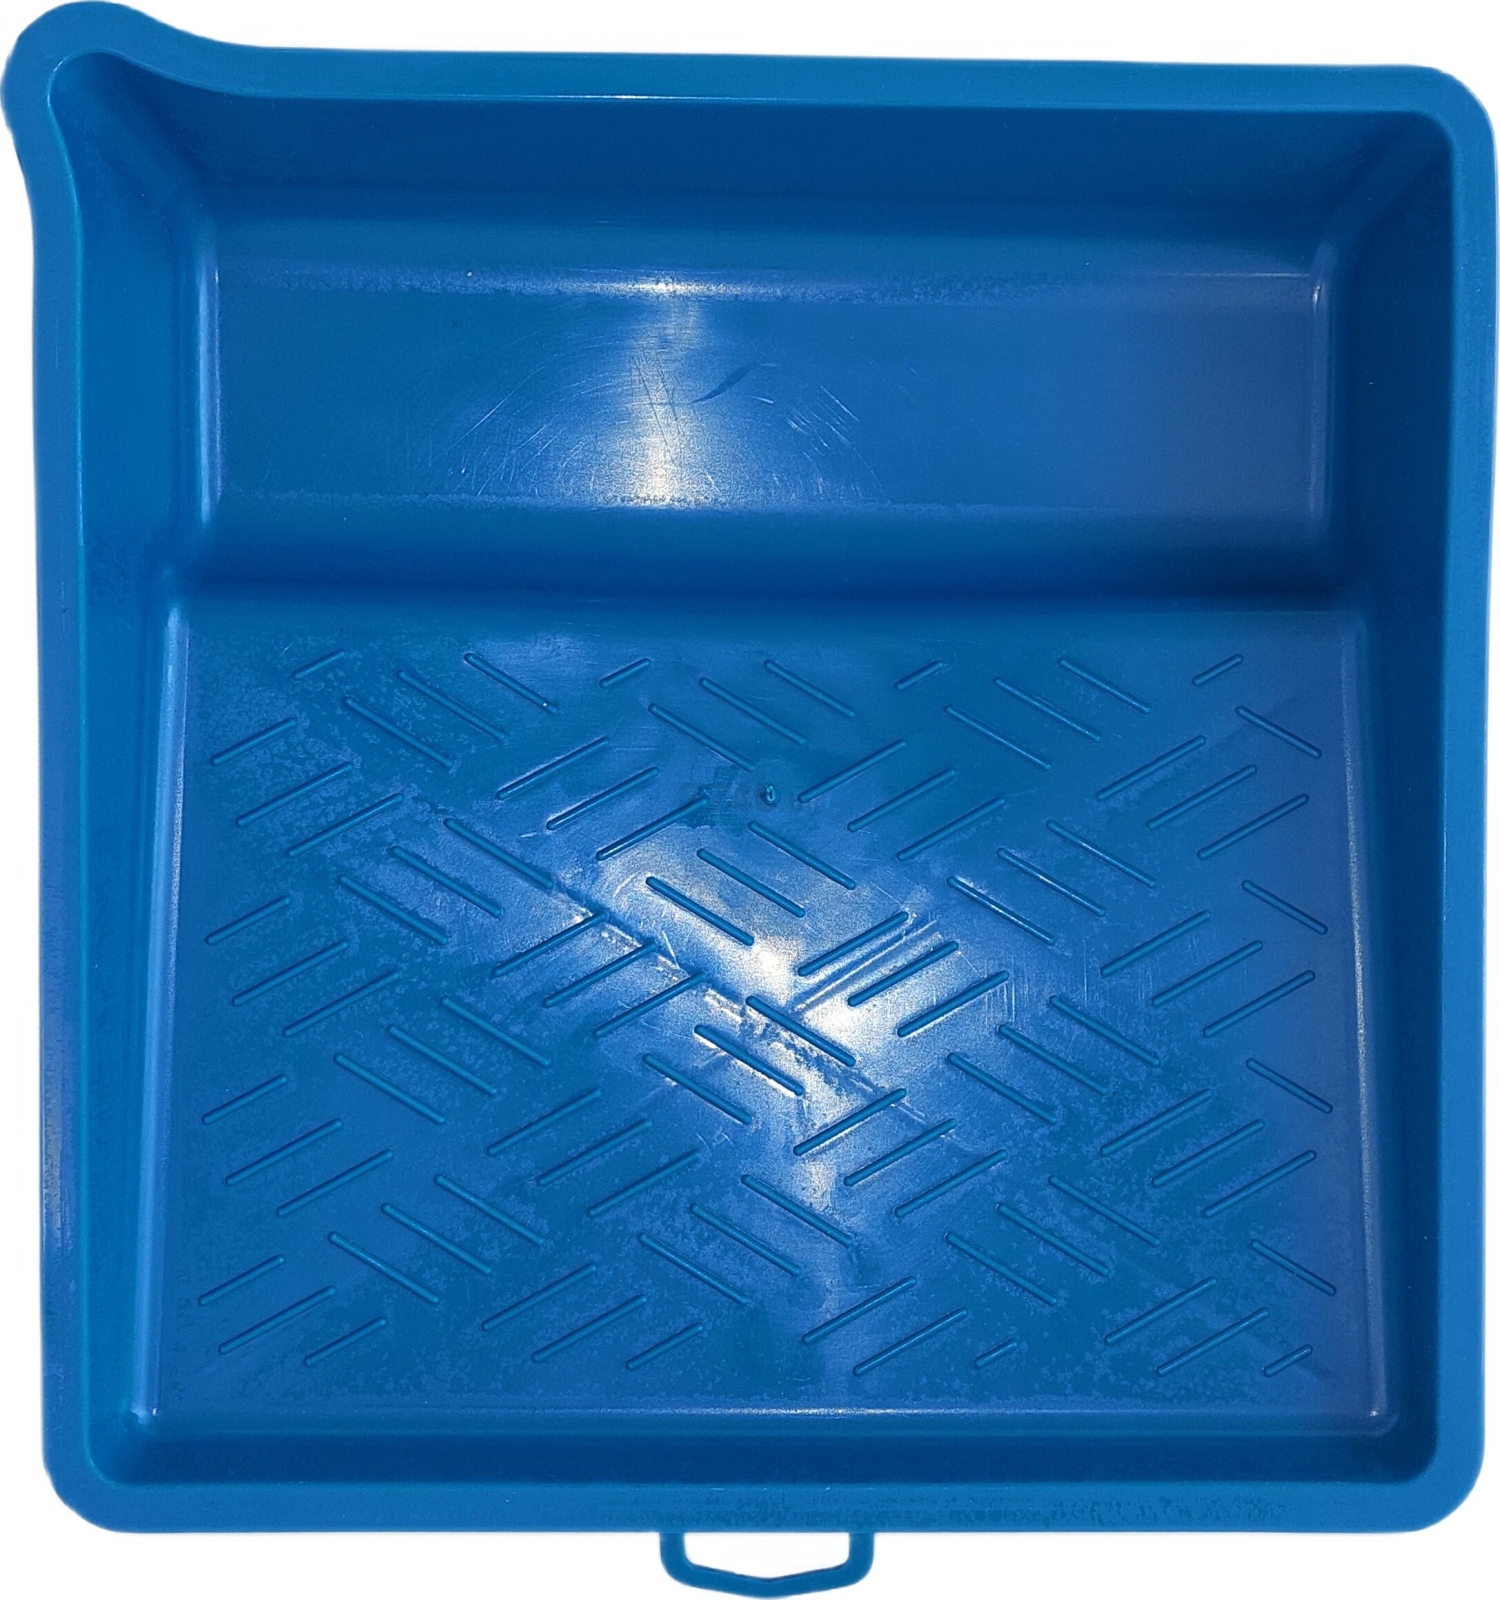 Ванночка малярная ПРАКТИК 270х280 мм синяя (27700421057)